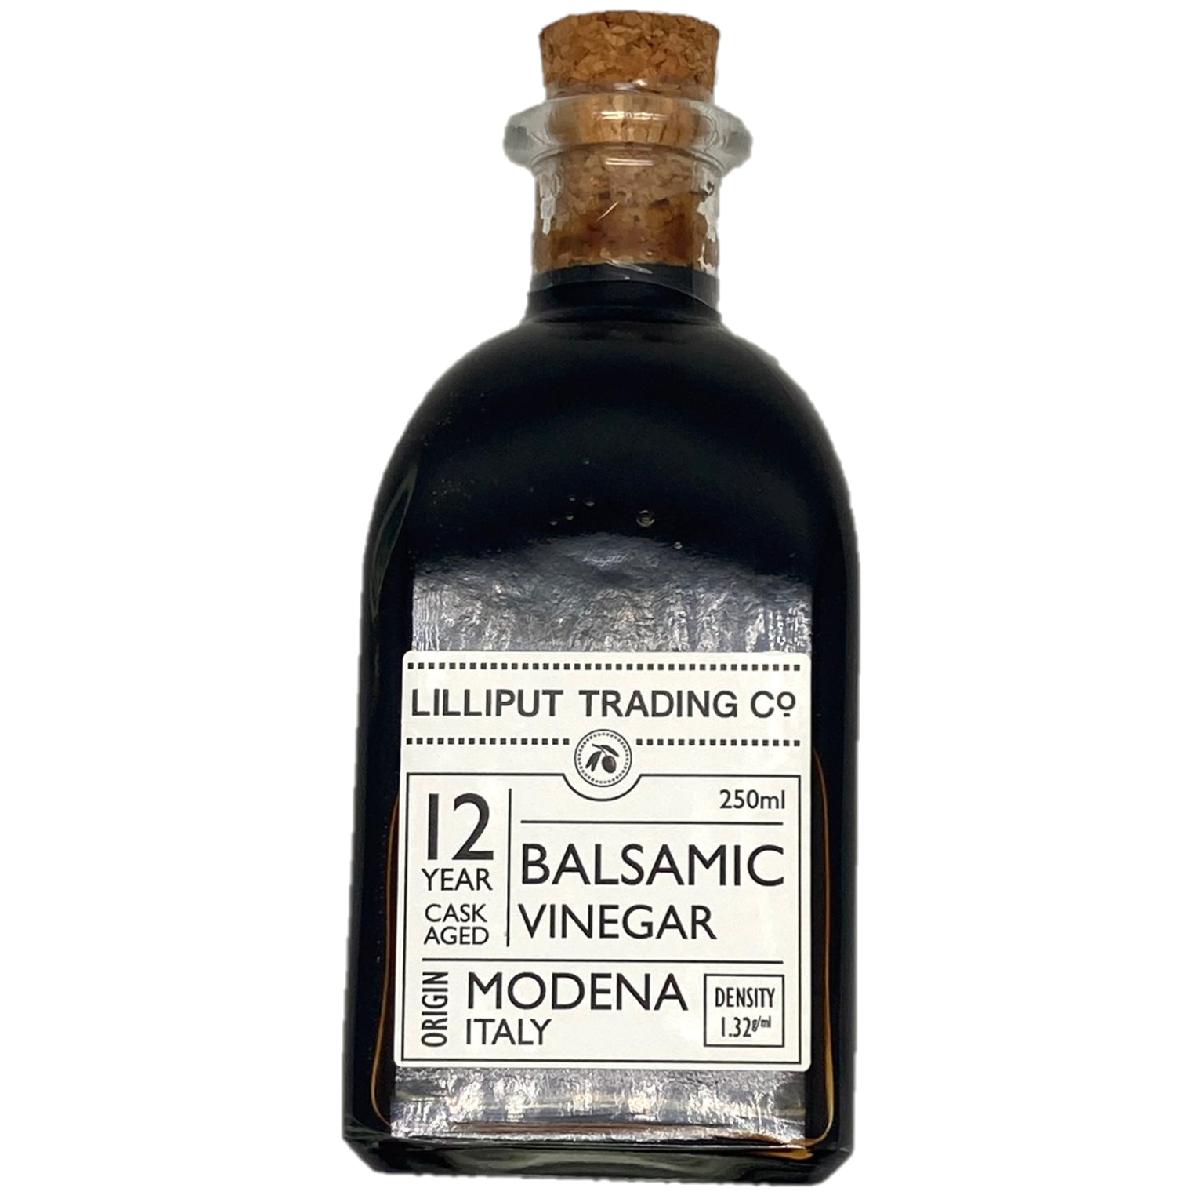 Lilliput Trading Co. 12 Year Cask Aged Balsamic Vinegar 250ml